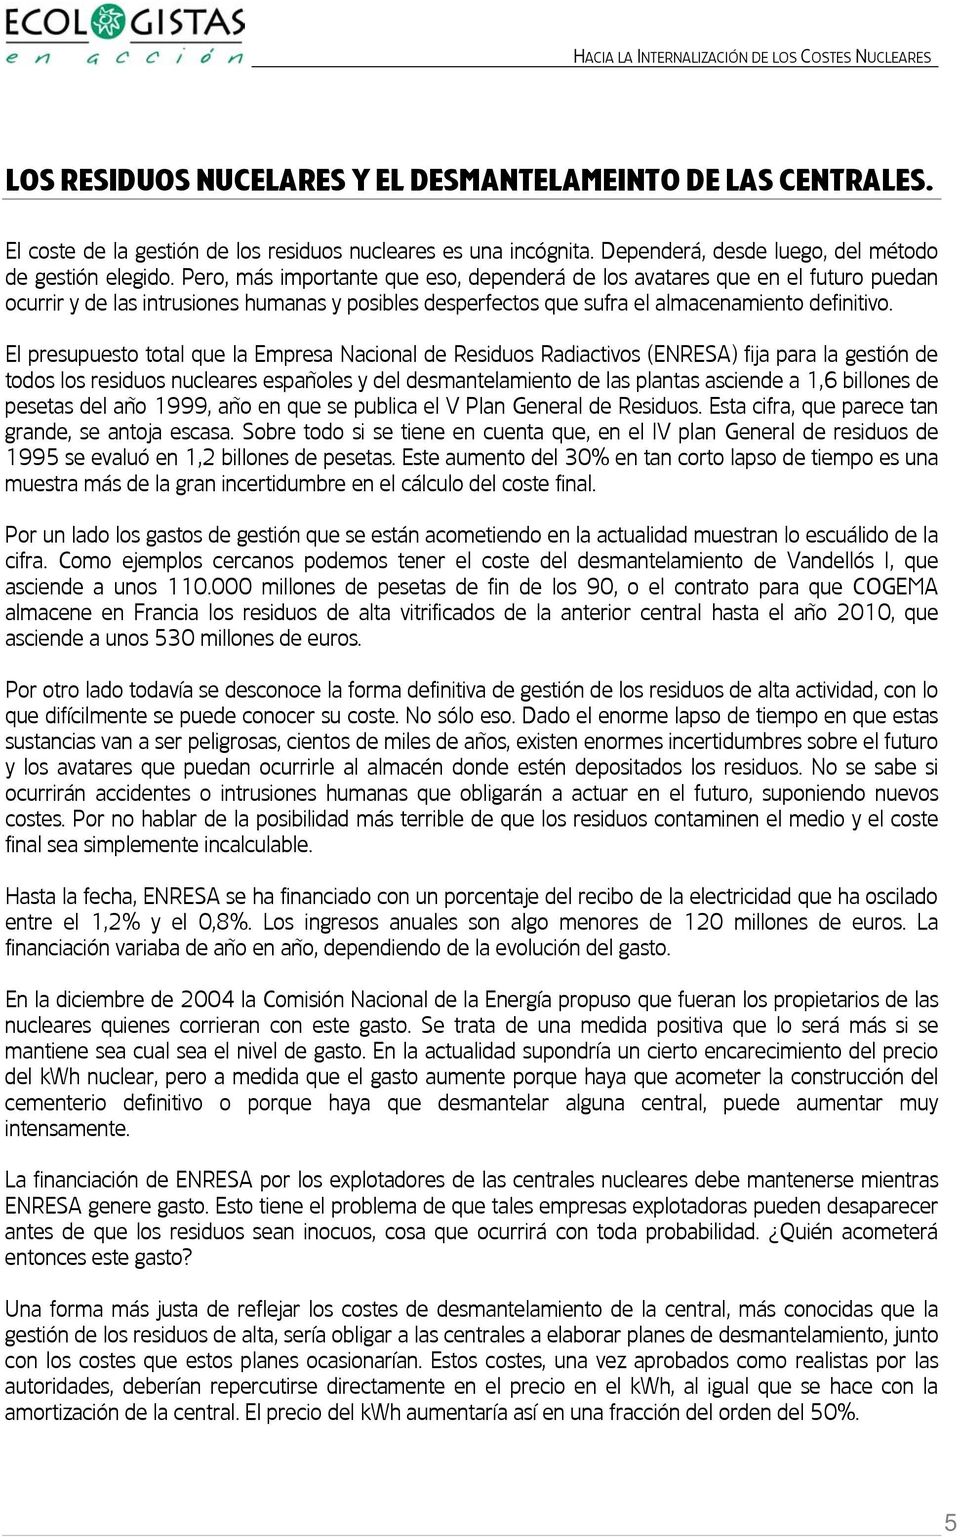 El presupuesto total que la Empresa Nacional de Residuos Radiactivos (ENRESA) fija para la gestión de todos los residuos nucleares españoles y del desmantelamiento de las plantas asciende a 1,6